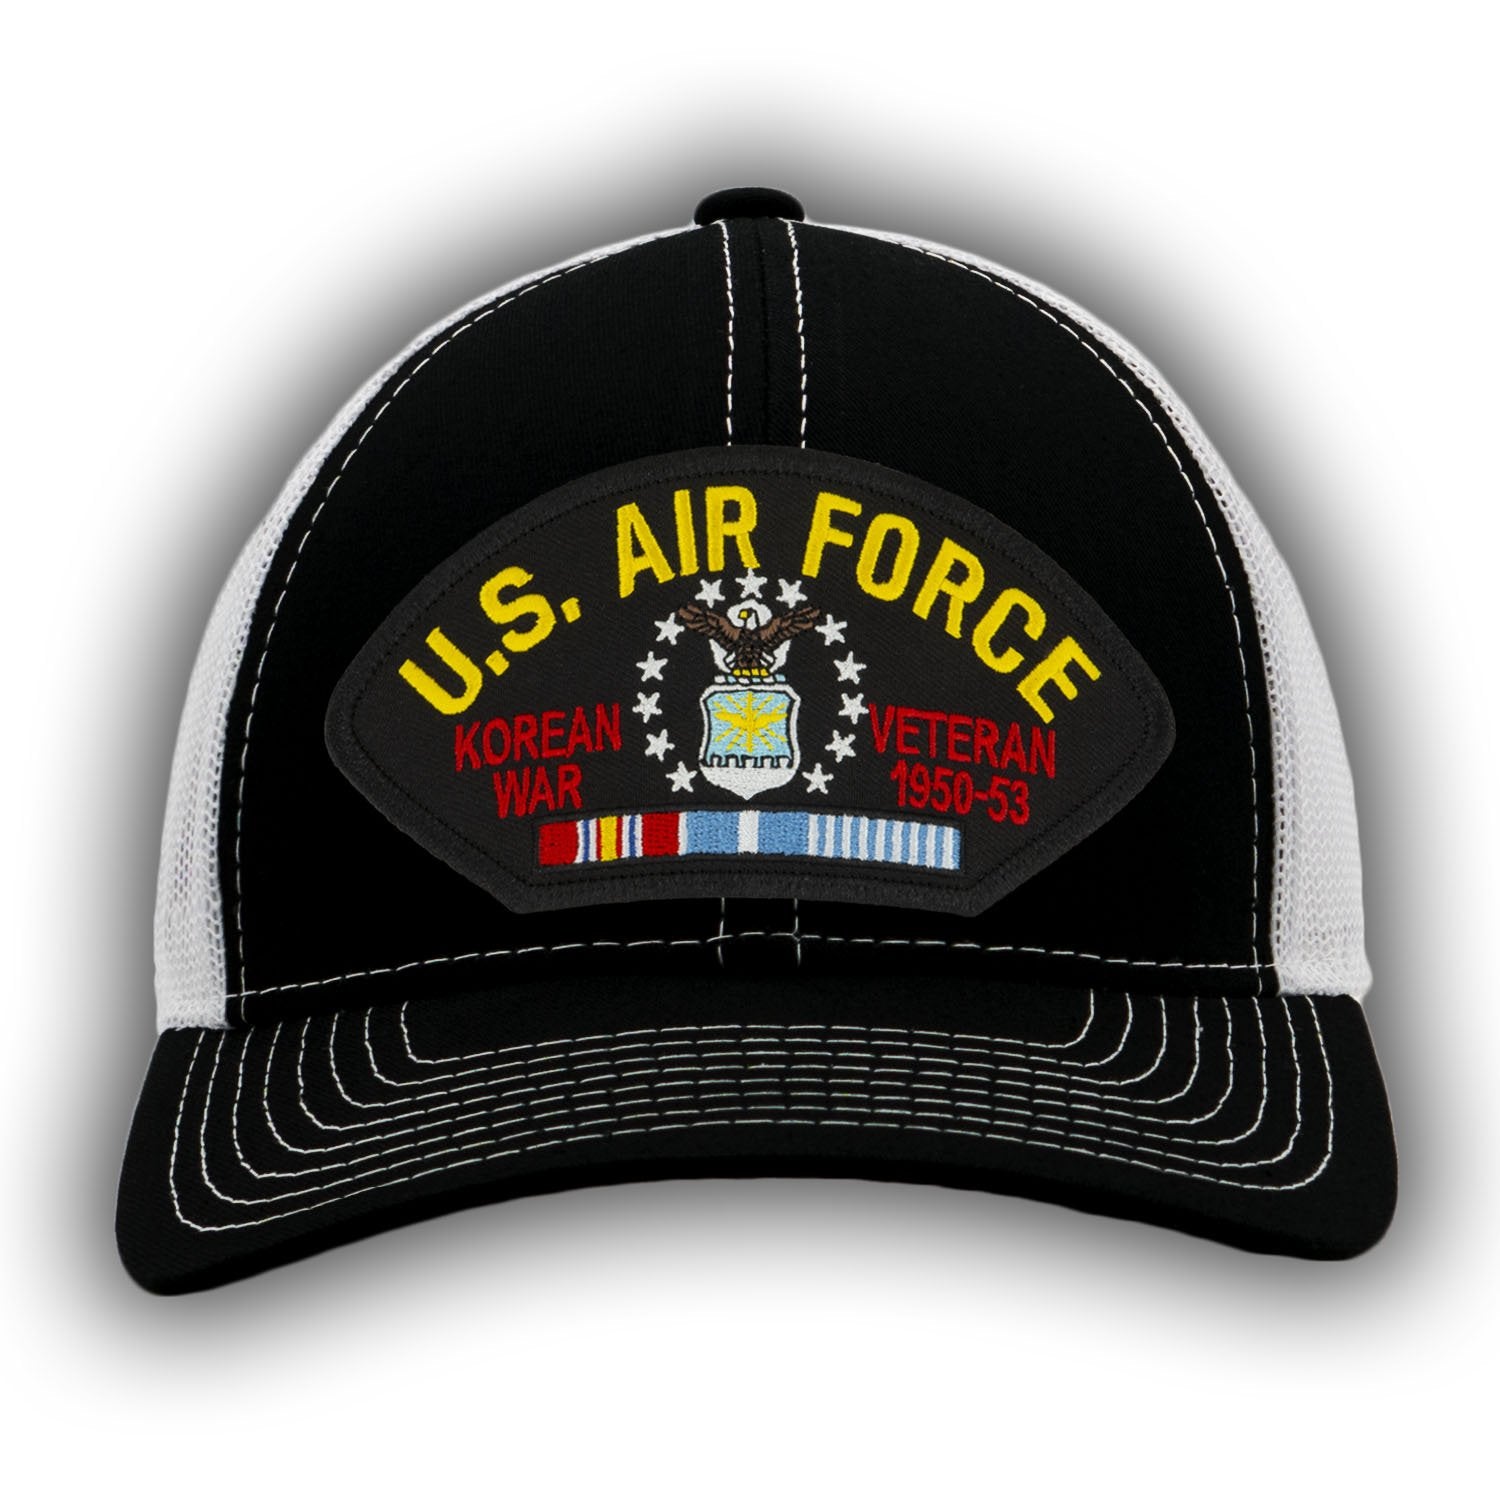 US Air Force - Korean War Veteran Hat - Multiple Colors Available